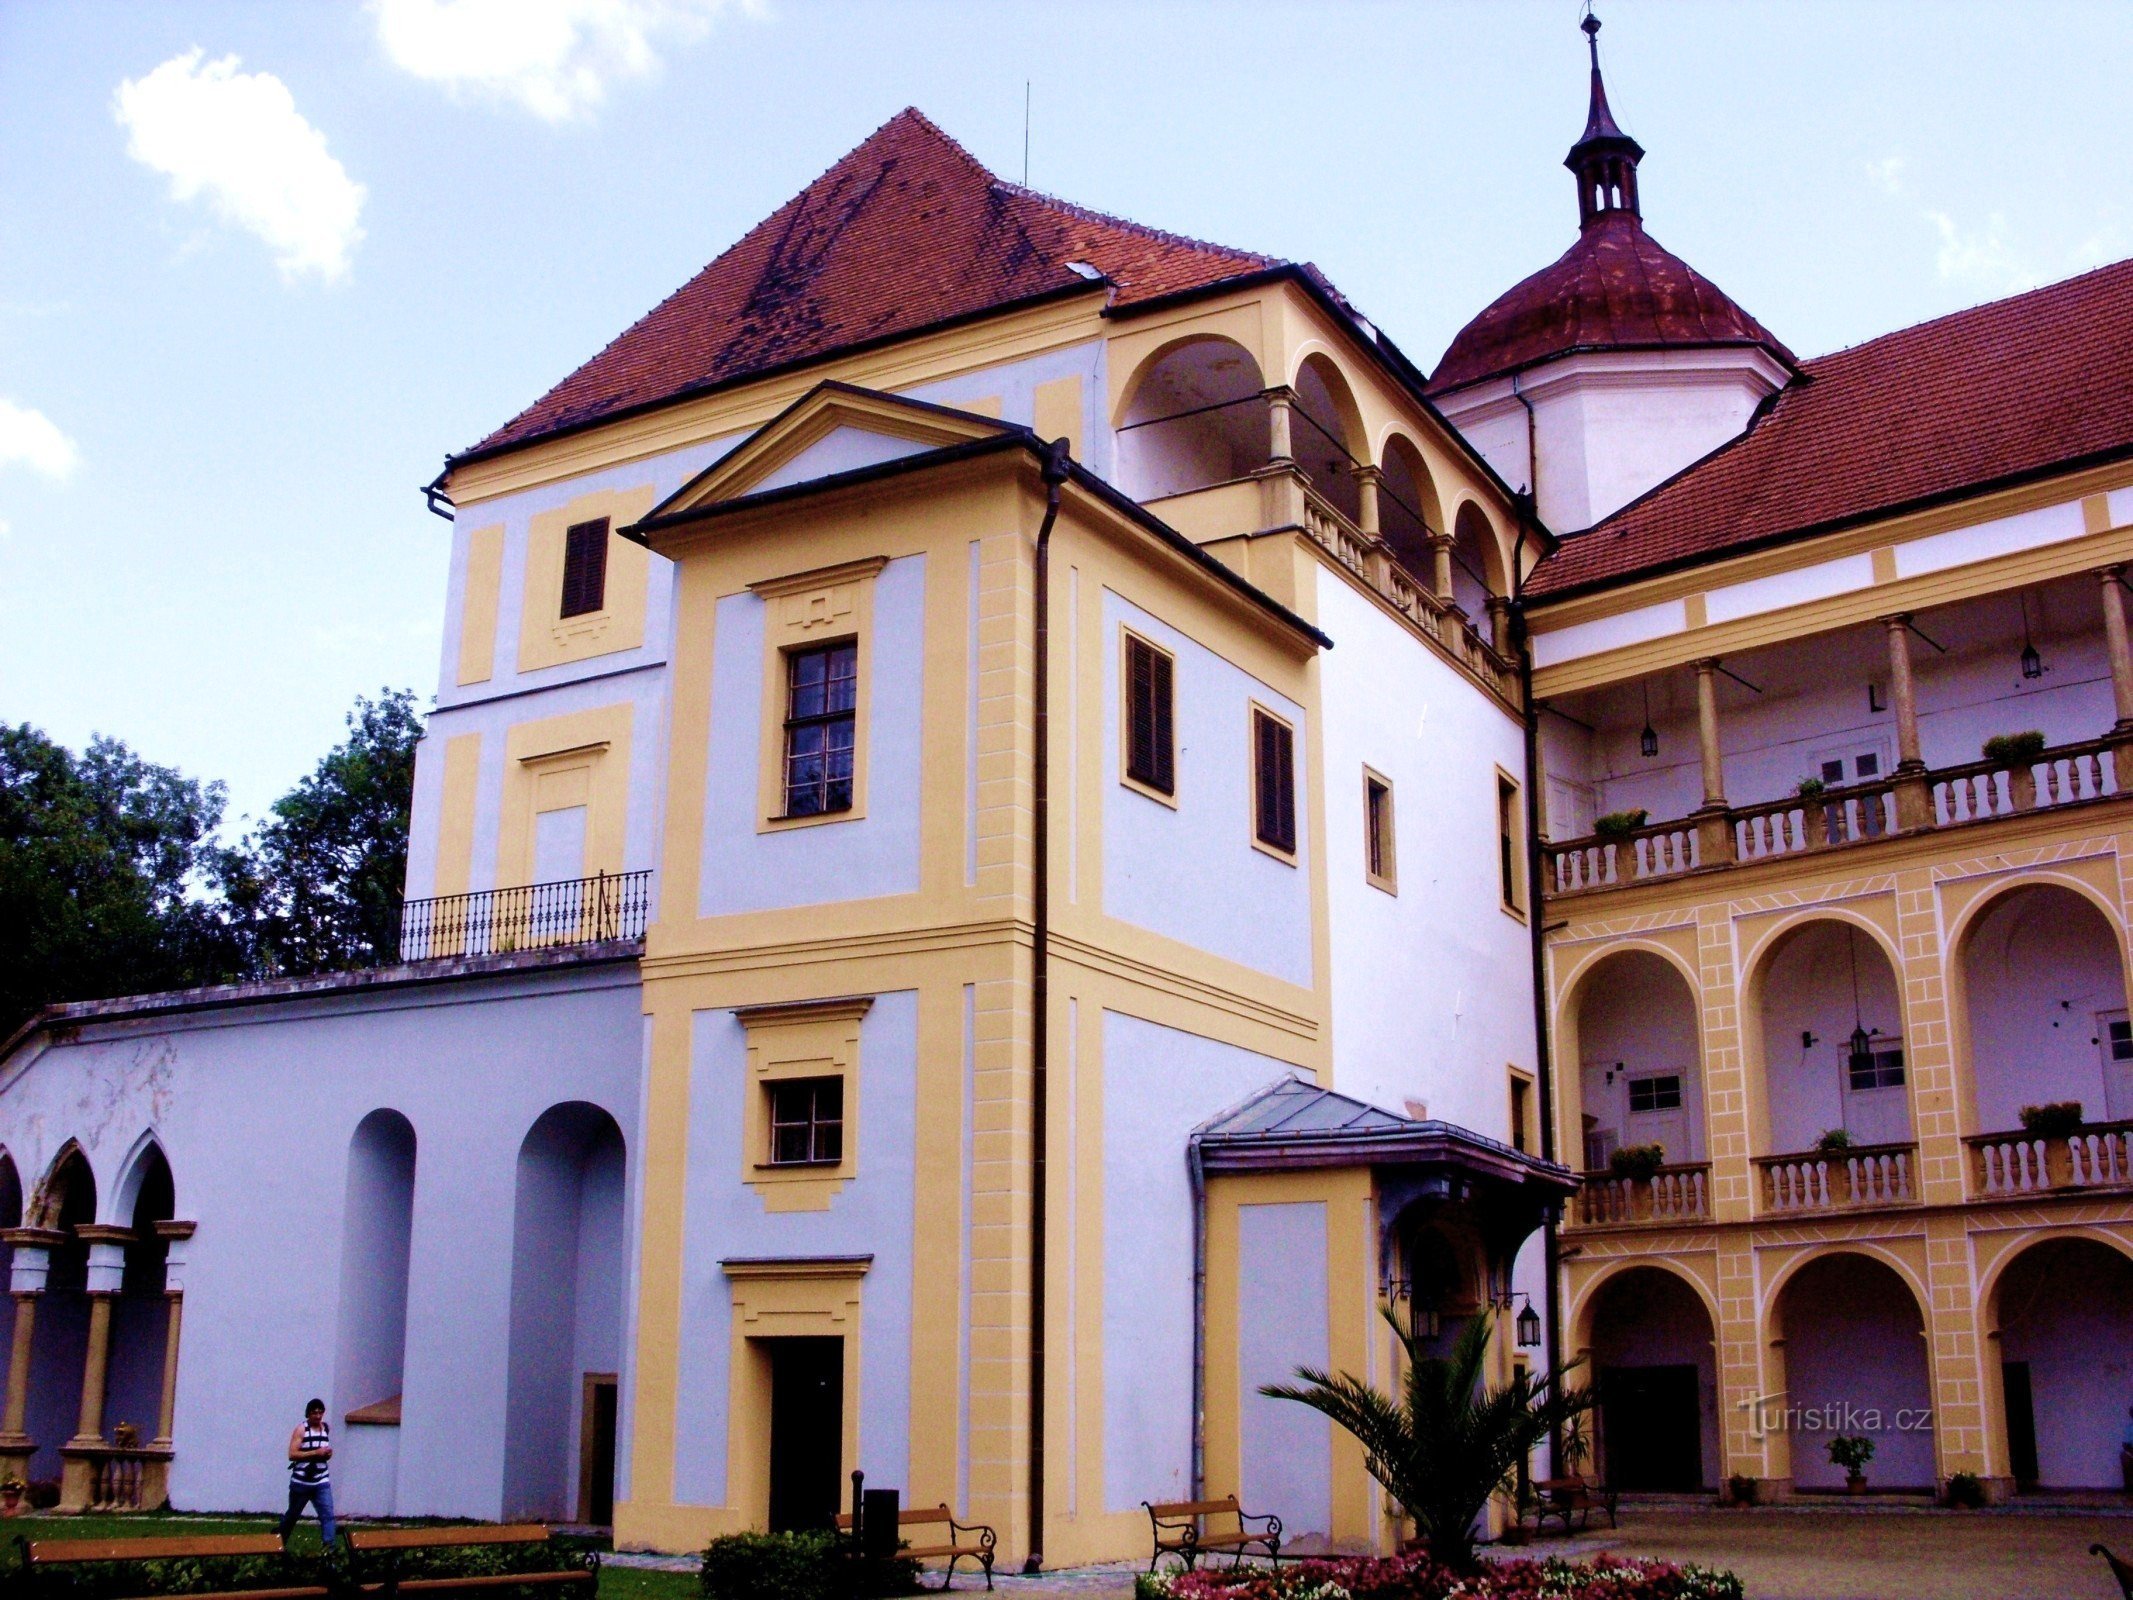 Pentru o experiență la castelul din Tovačov